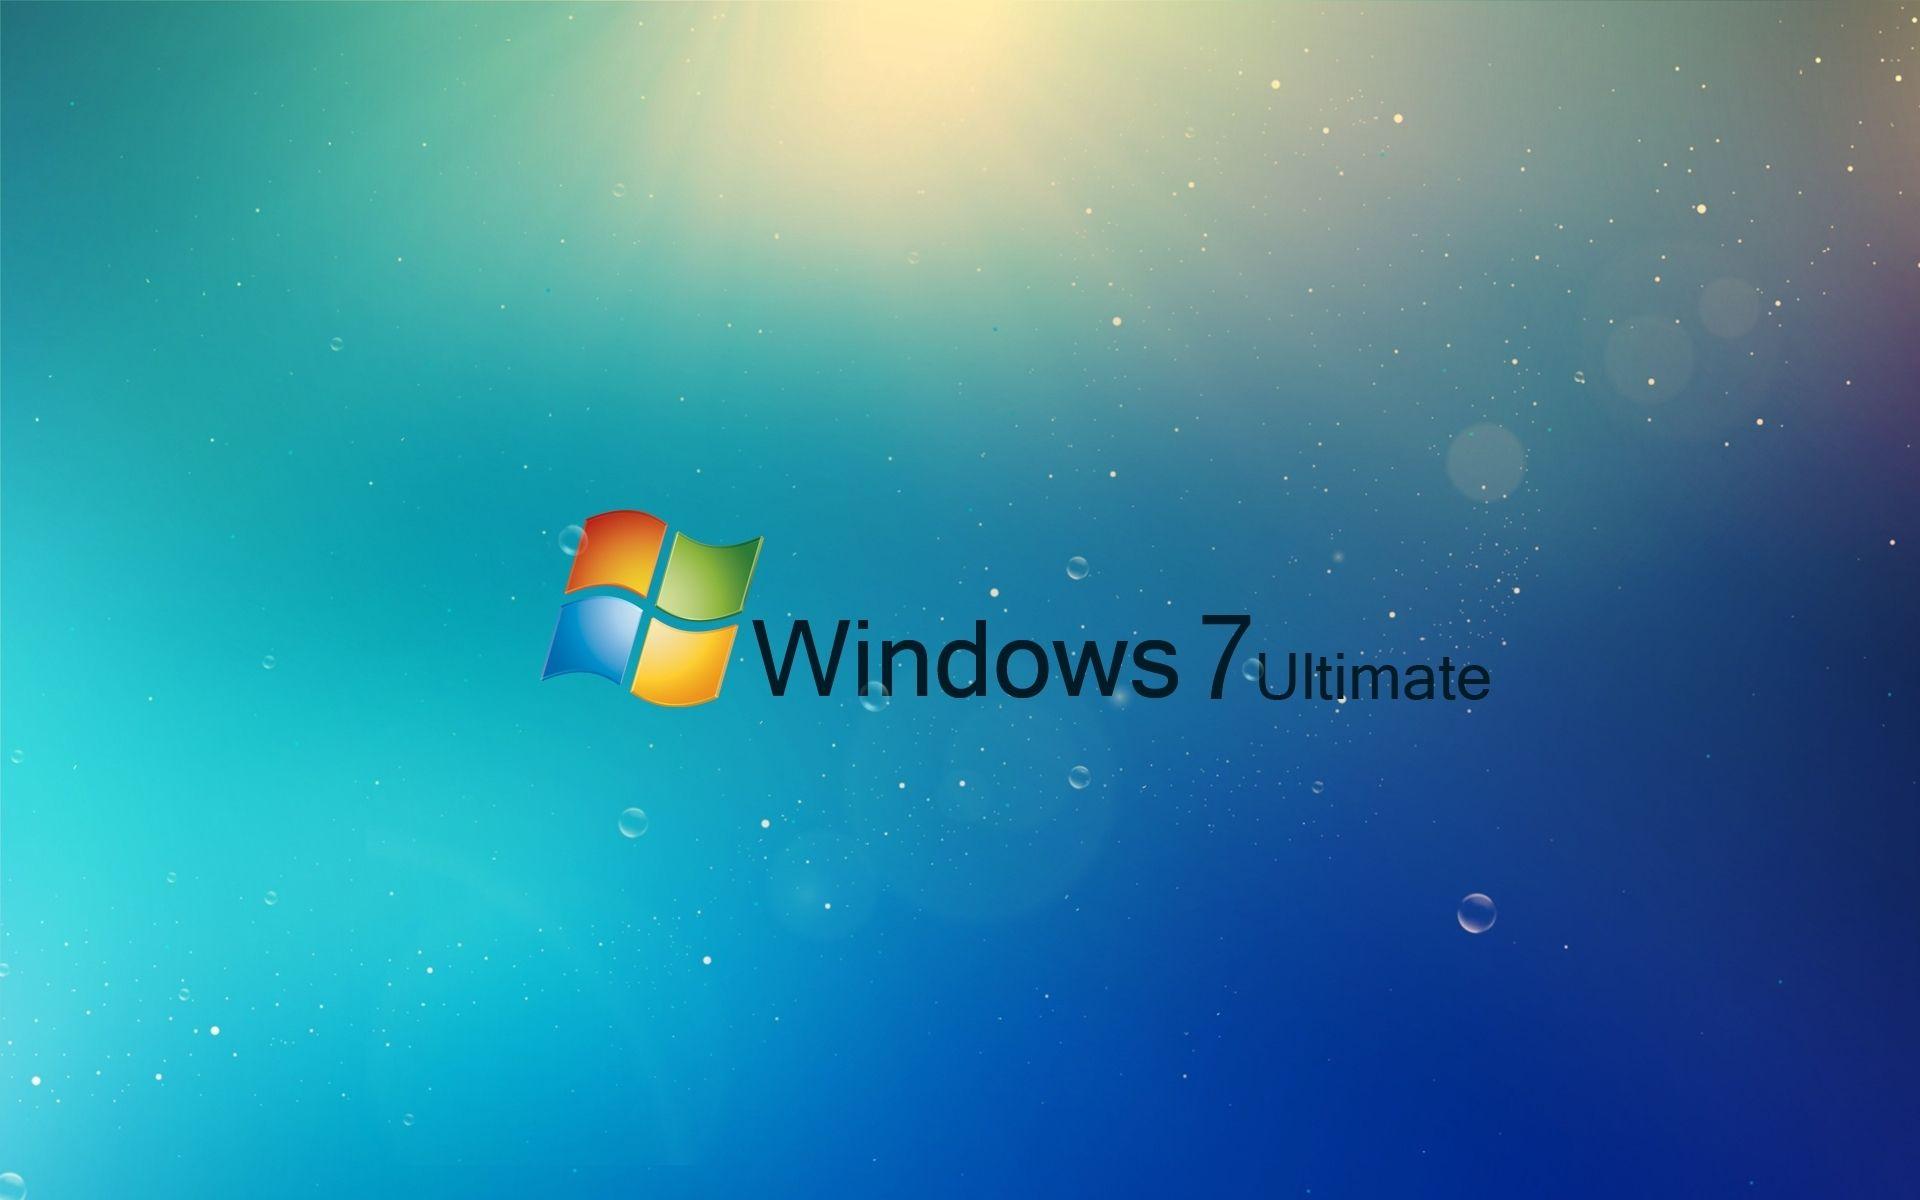 Một bức ảnh đẹp là một nghệ thuật, hãy chọn cho mình hình nền Windows 7 đẹp nhất để tạo nên một phong cách độc đáo và khác biệt. Bức ảnh đó có thể phản ánh sự bình yên hay năng động, tùy vào sự lựa chọn của bạn.